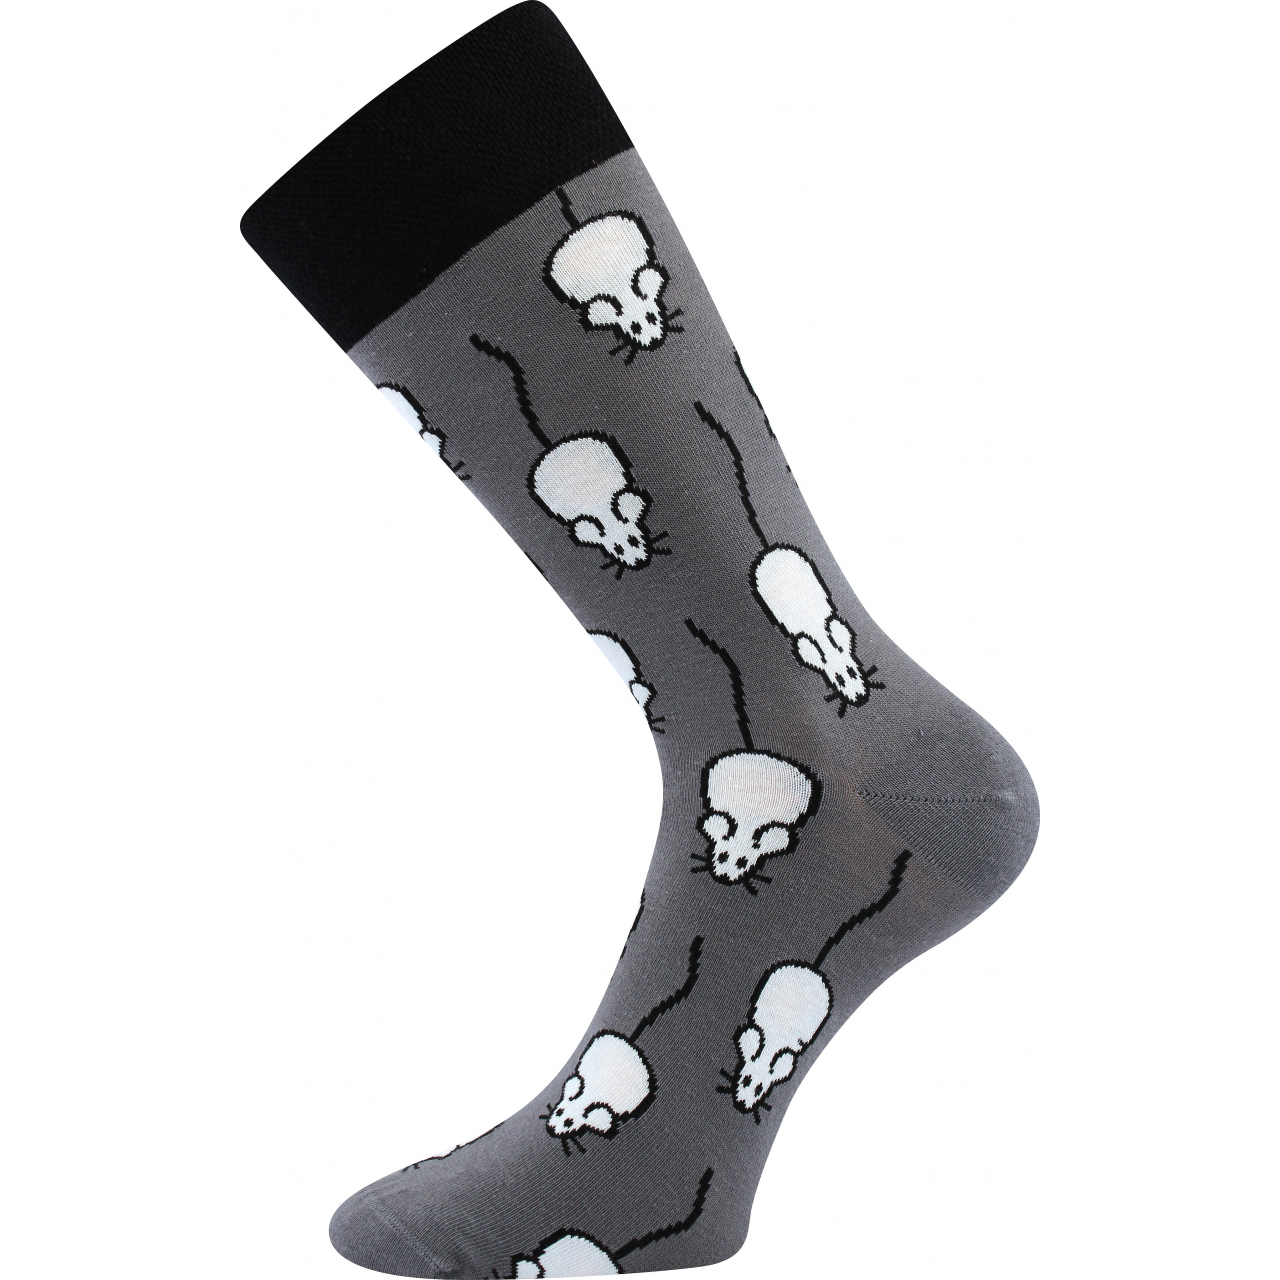 Ponožky společenské unisex Lonka Twidor Myšky - šedé, 39-42